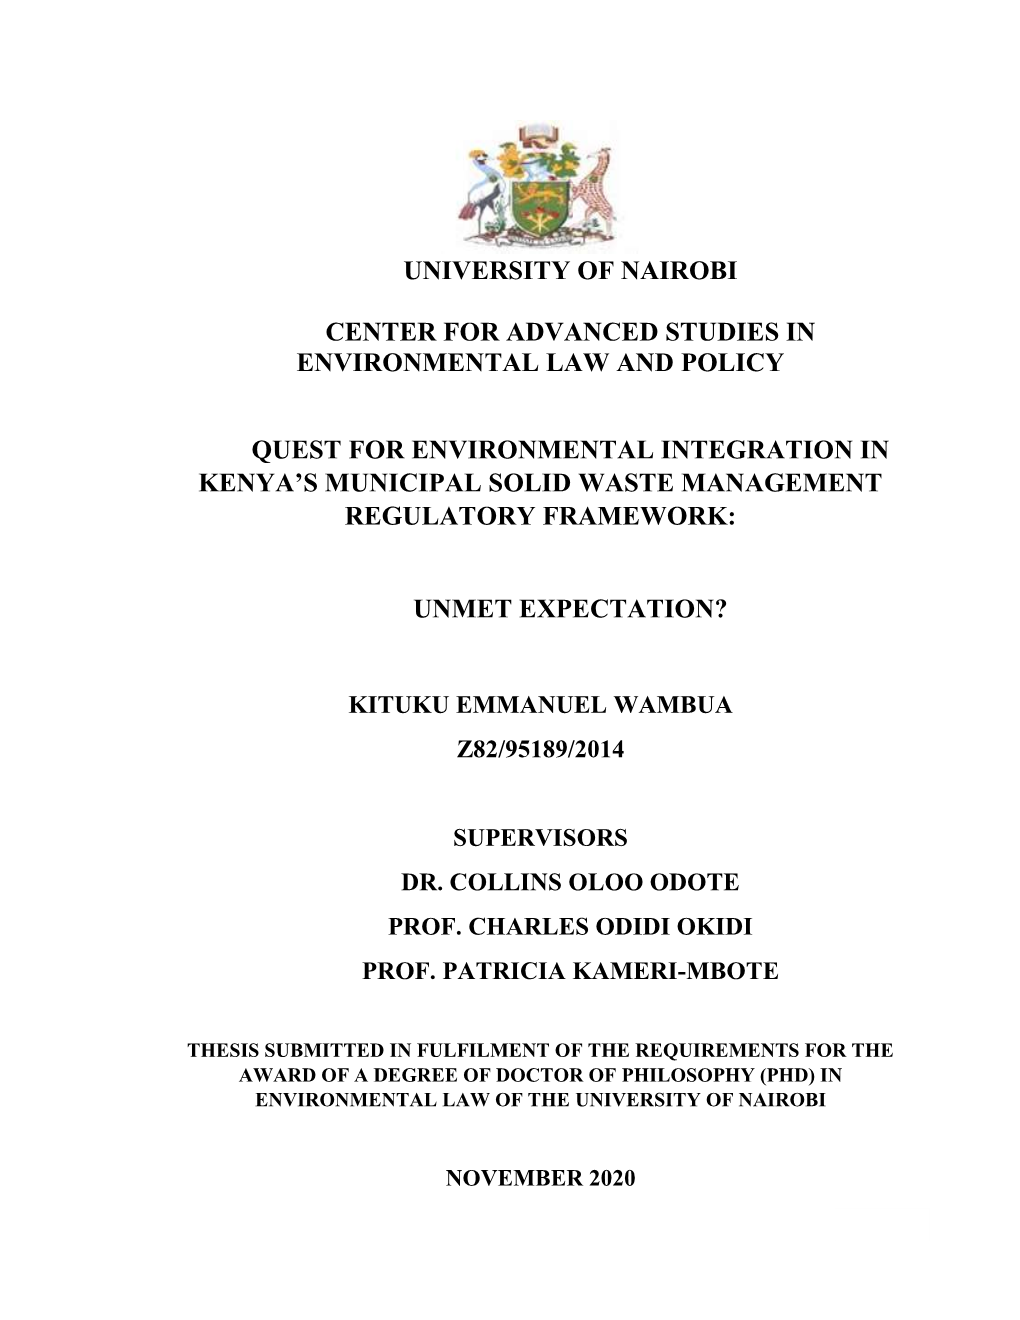 Quest for Environmental Integration in Kenya's Municipal Solid Waste Management Regulatory Framework